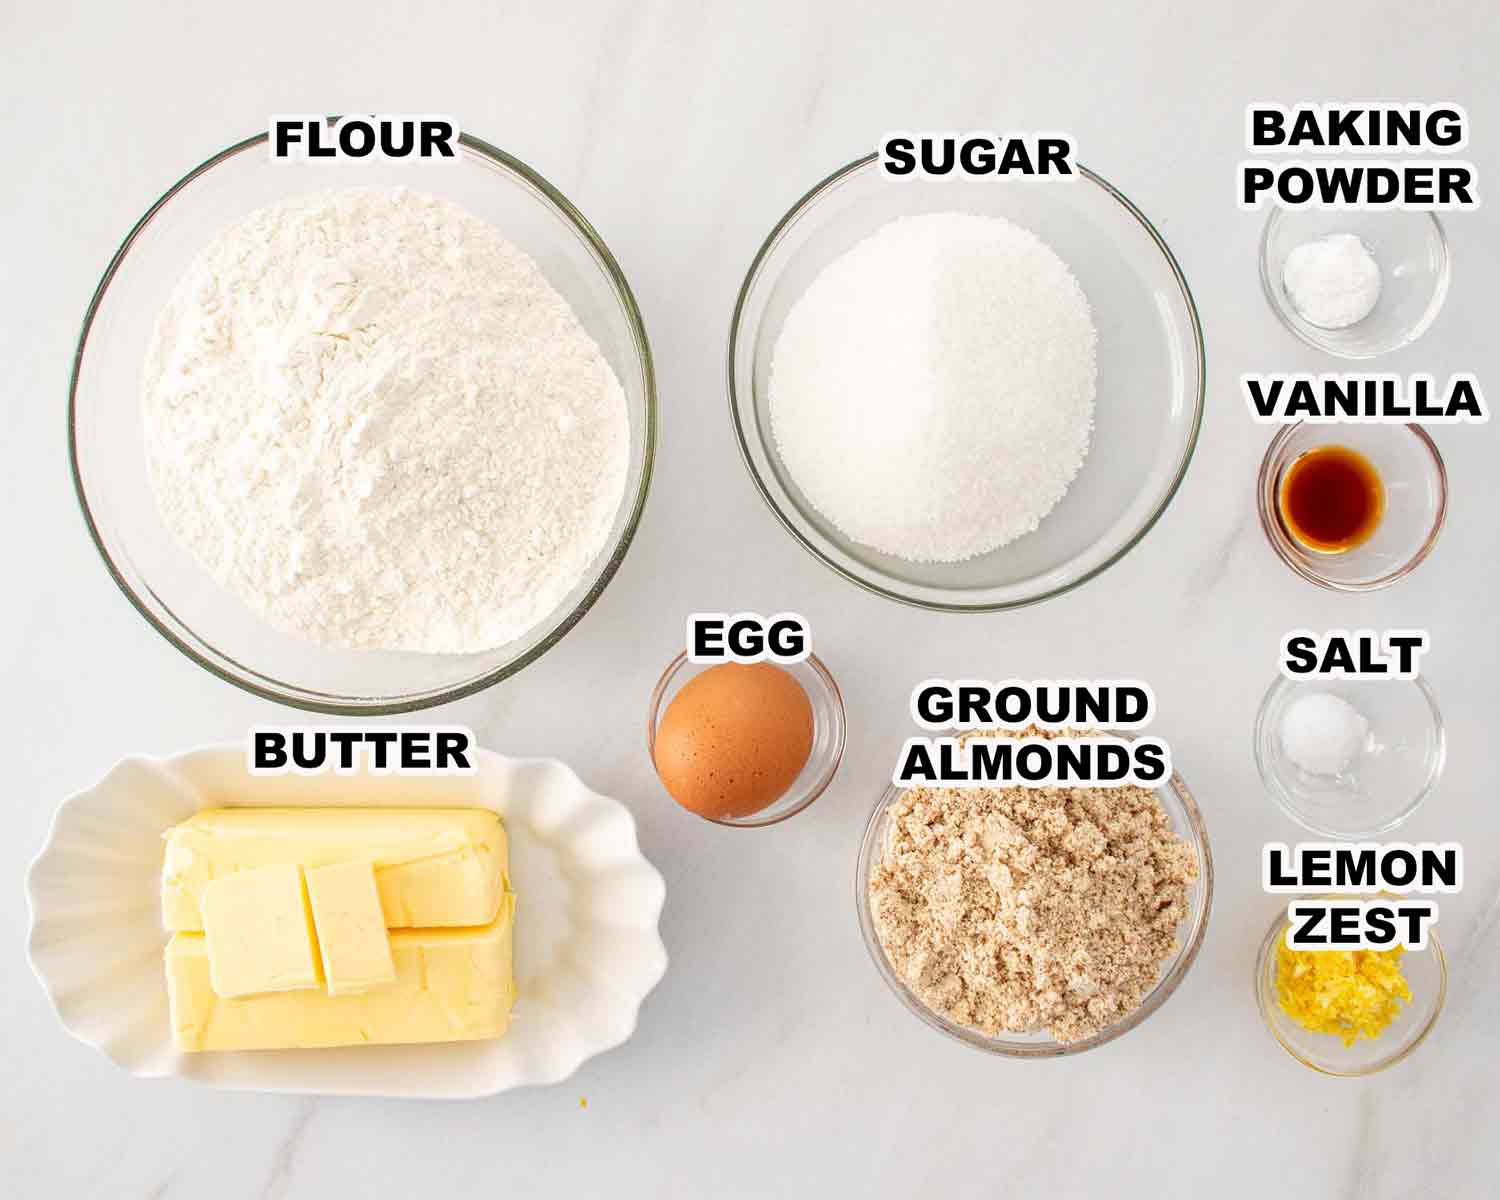 ingredients needed to make linzer cookies.